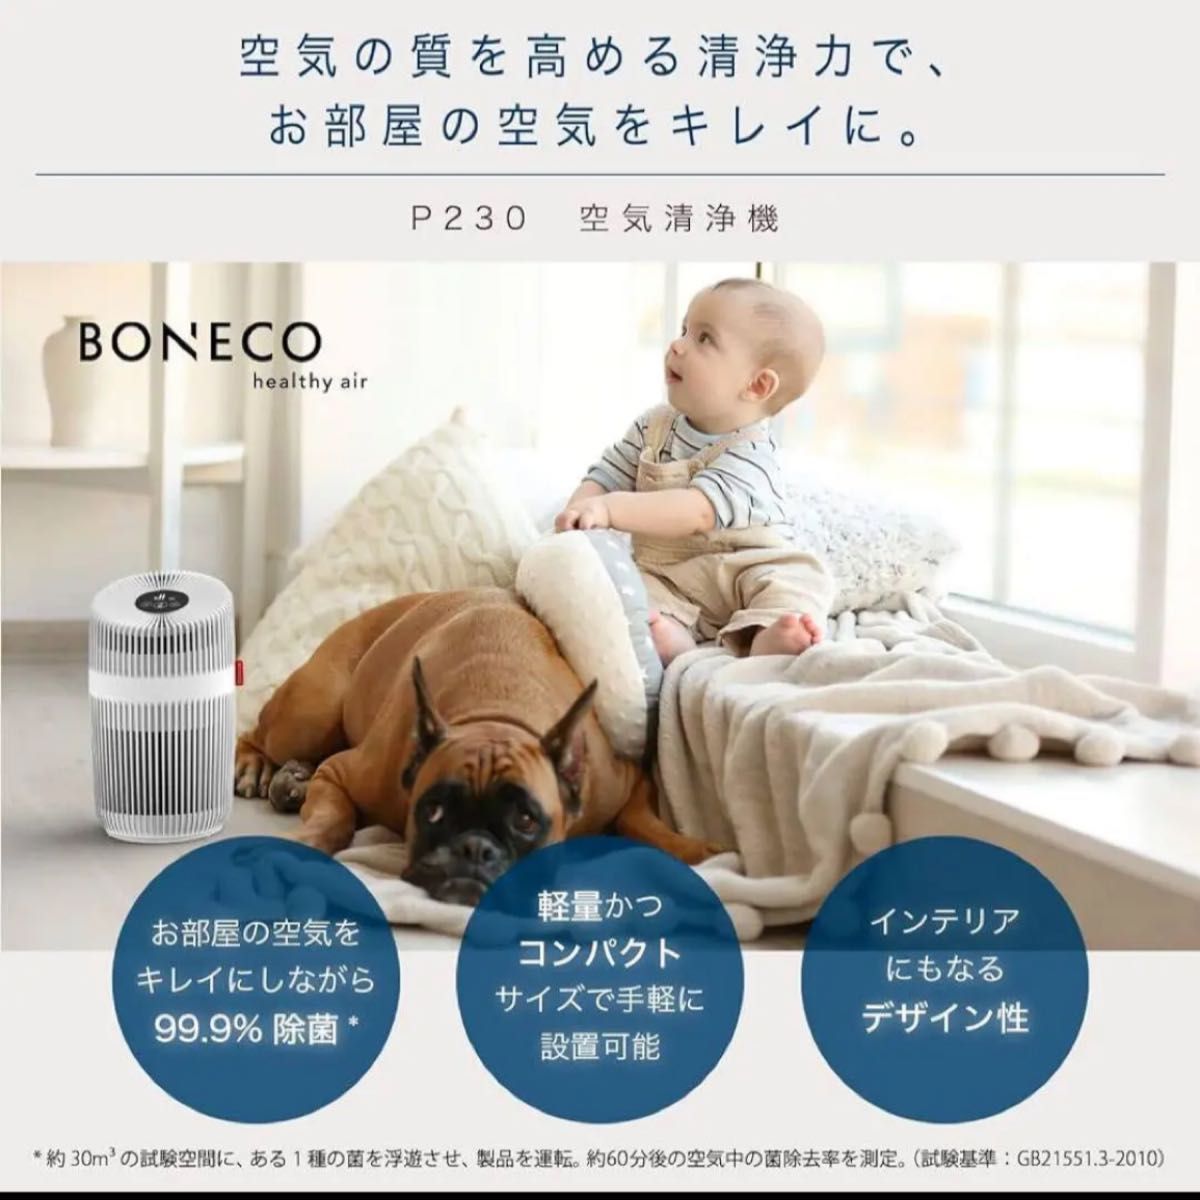 空気清浄機 BONECO P230 コンパクト 軽量 空気清浄器 簡単操作 省エネ